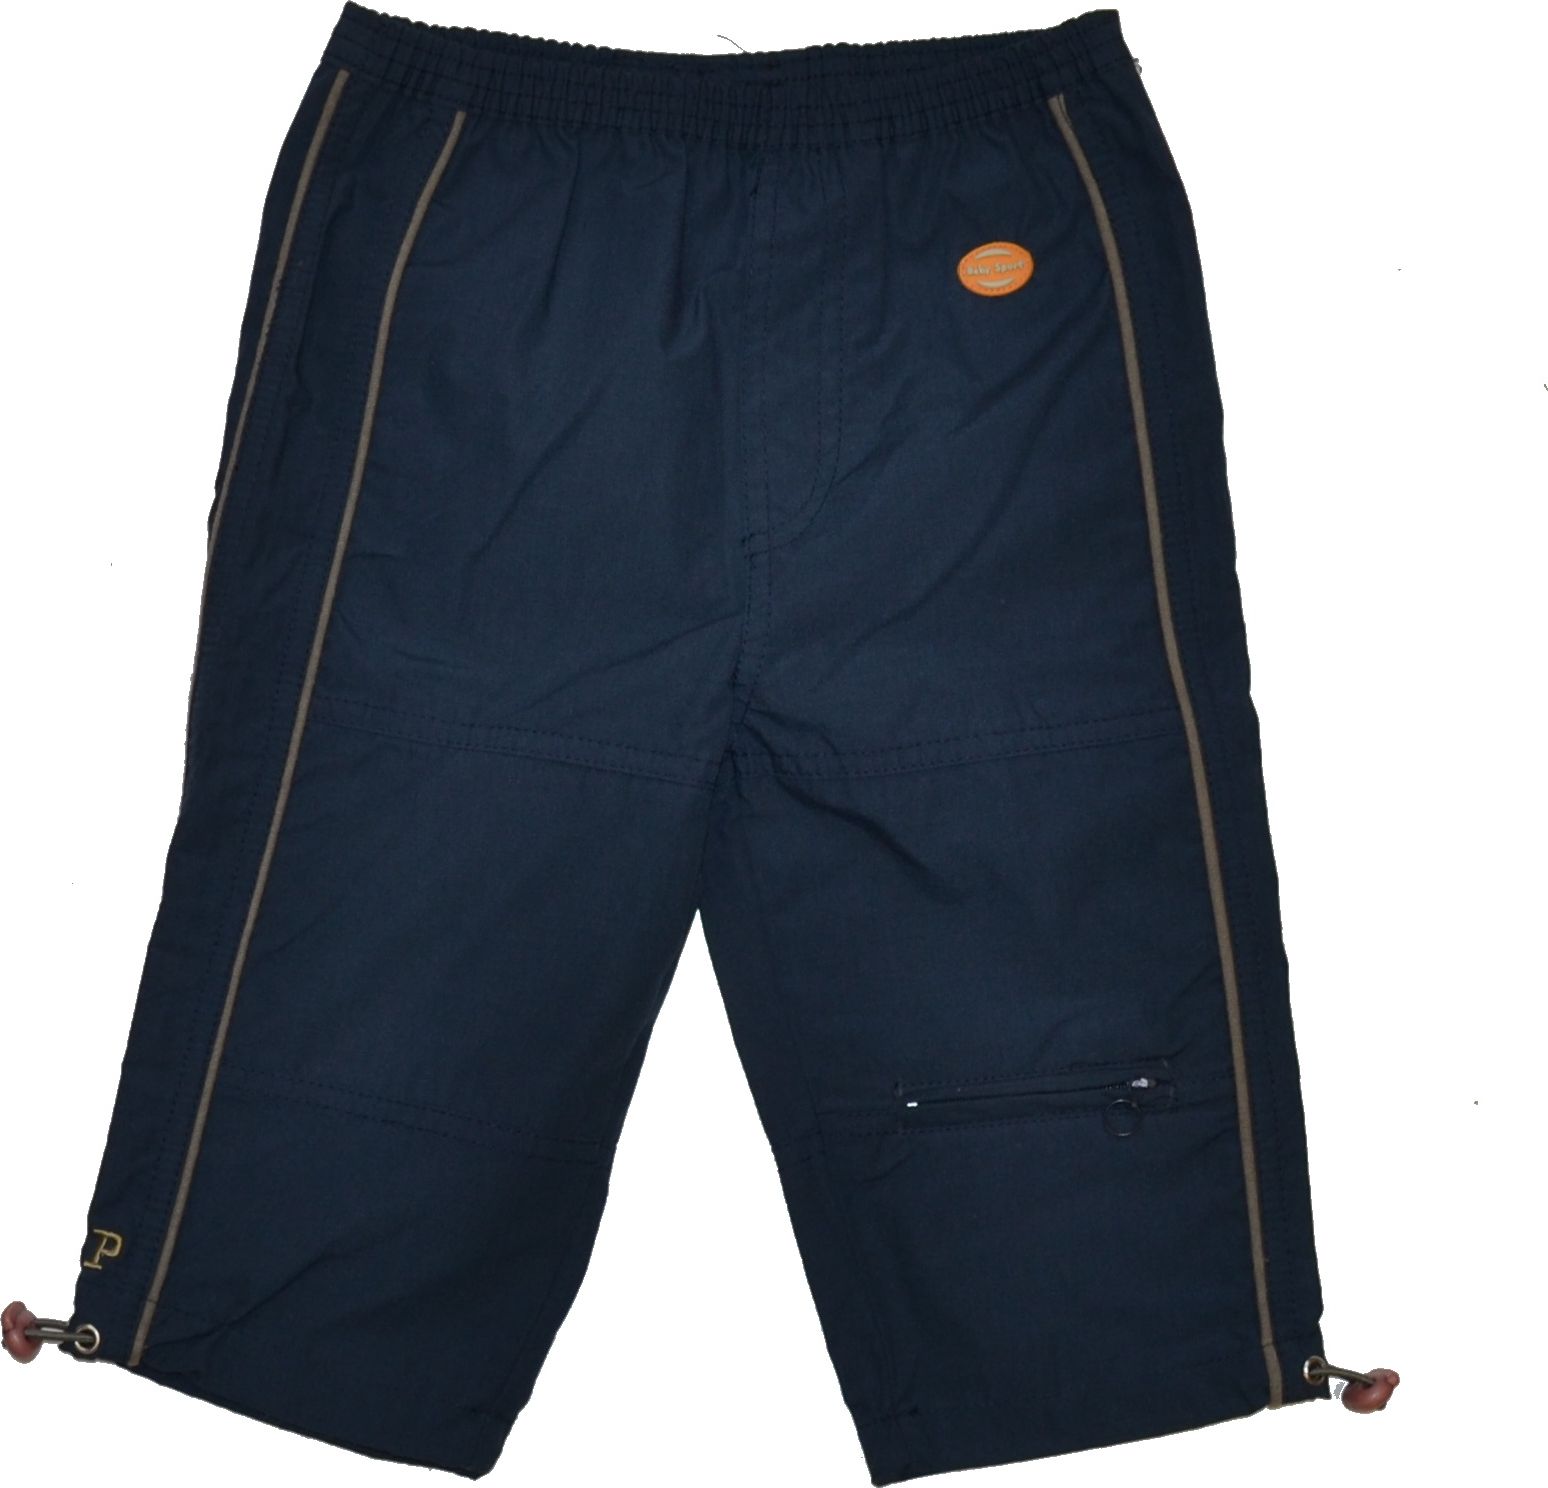 Dětské kalhoty, Dimo, tmavě modré, vel.80 Výprodej - obrázek 1